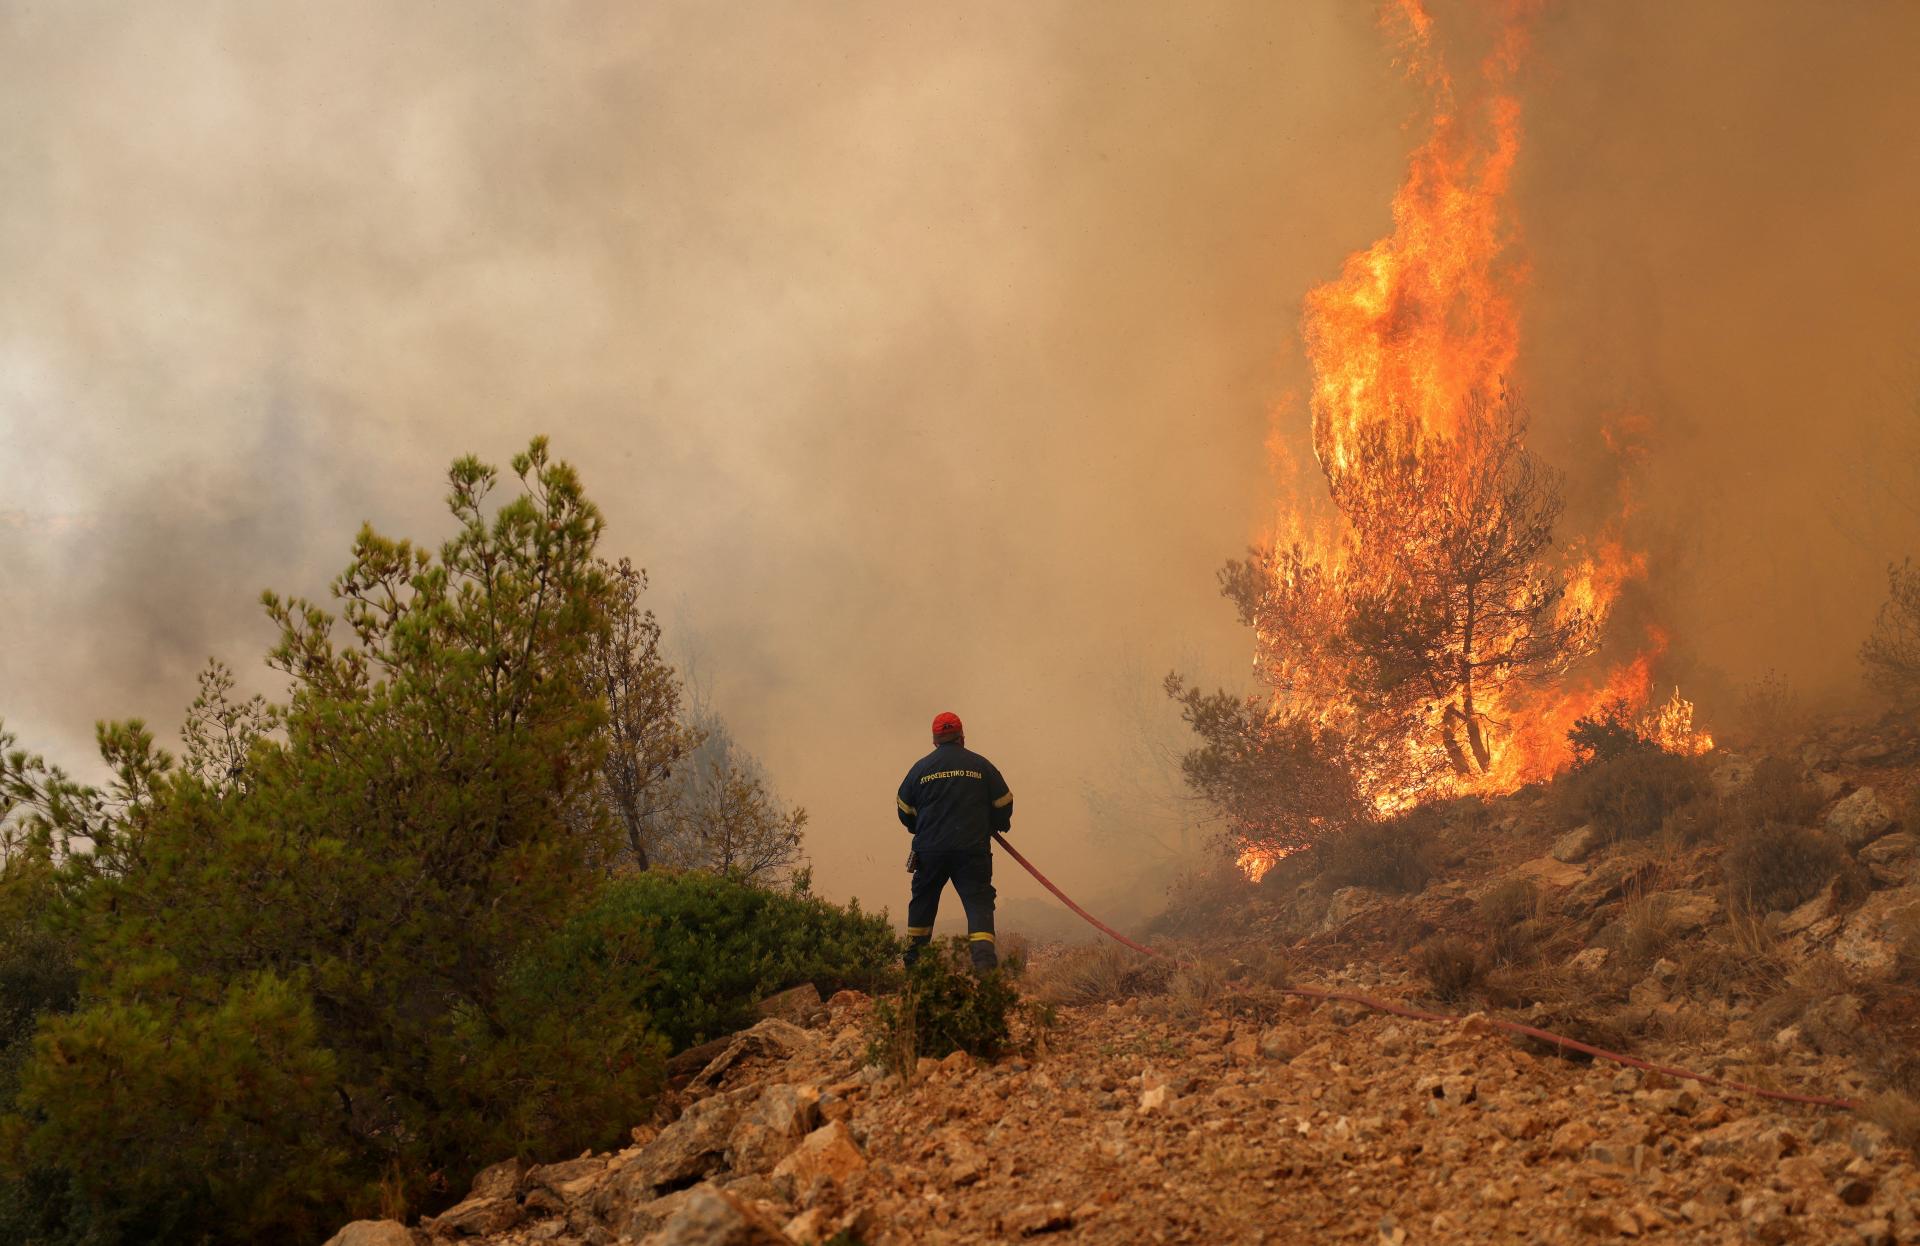 Päť krajín Európskej únie pomáha hasiť lesné požiare v Grécku, je medzi nimi aj Slovensko